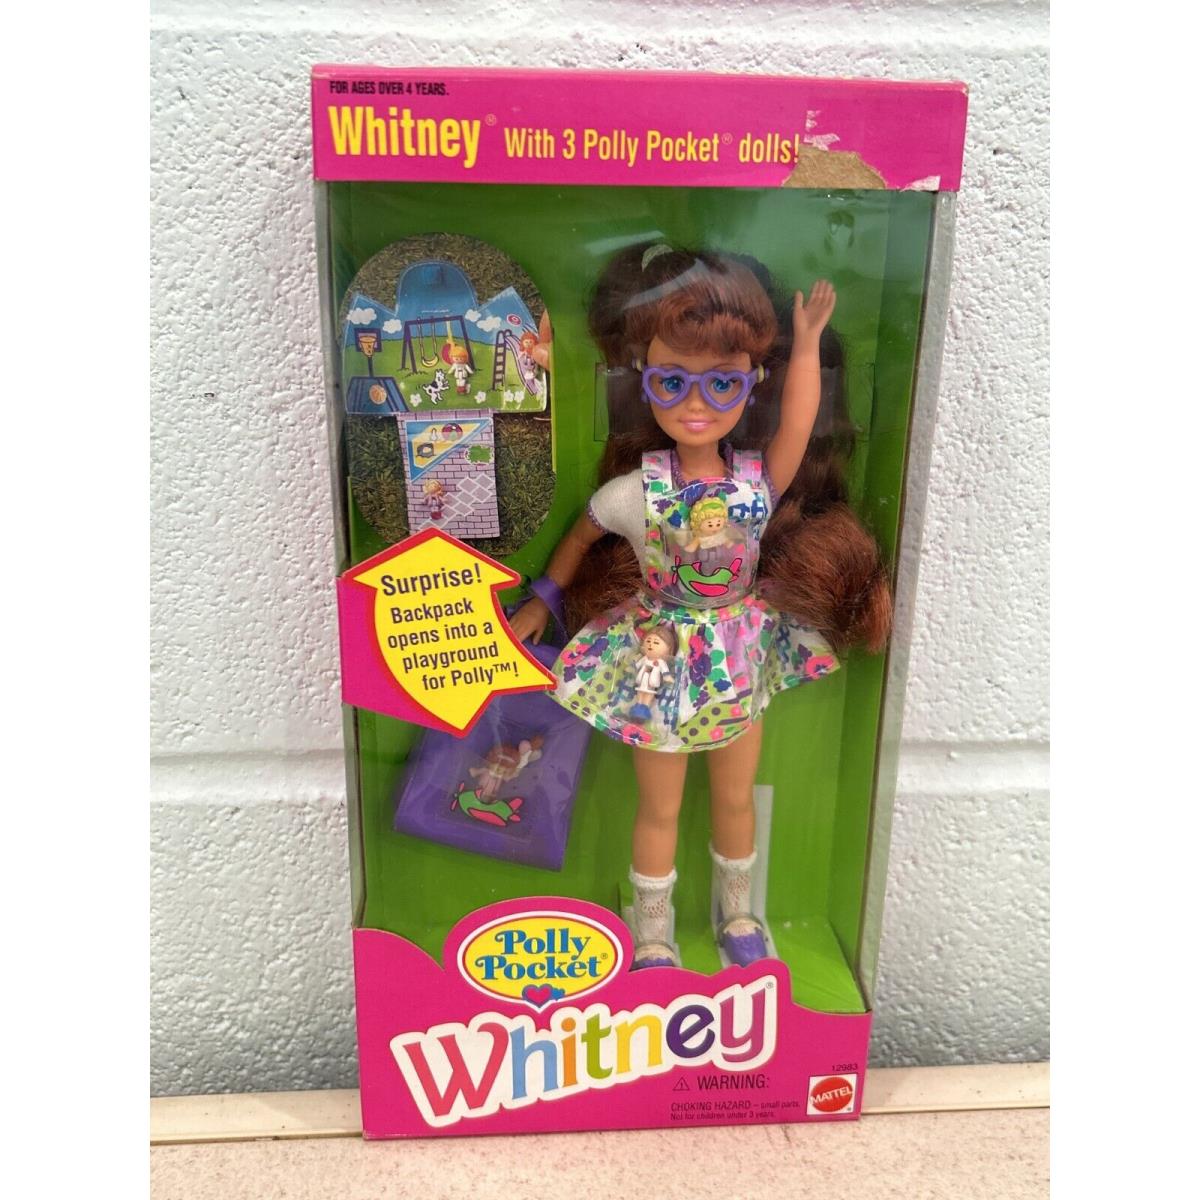 Polly Pocket Whitney Doll 8 Doll 1994 Mattel No. 12983